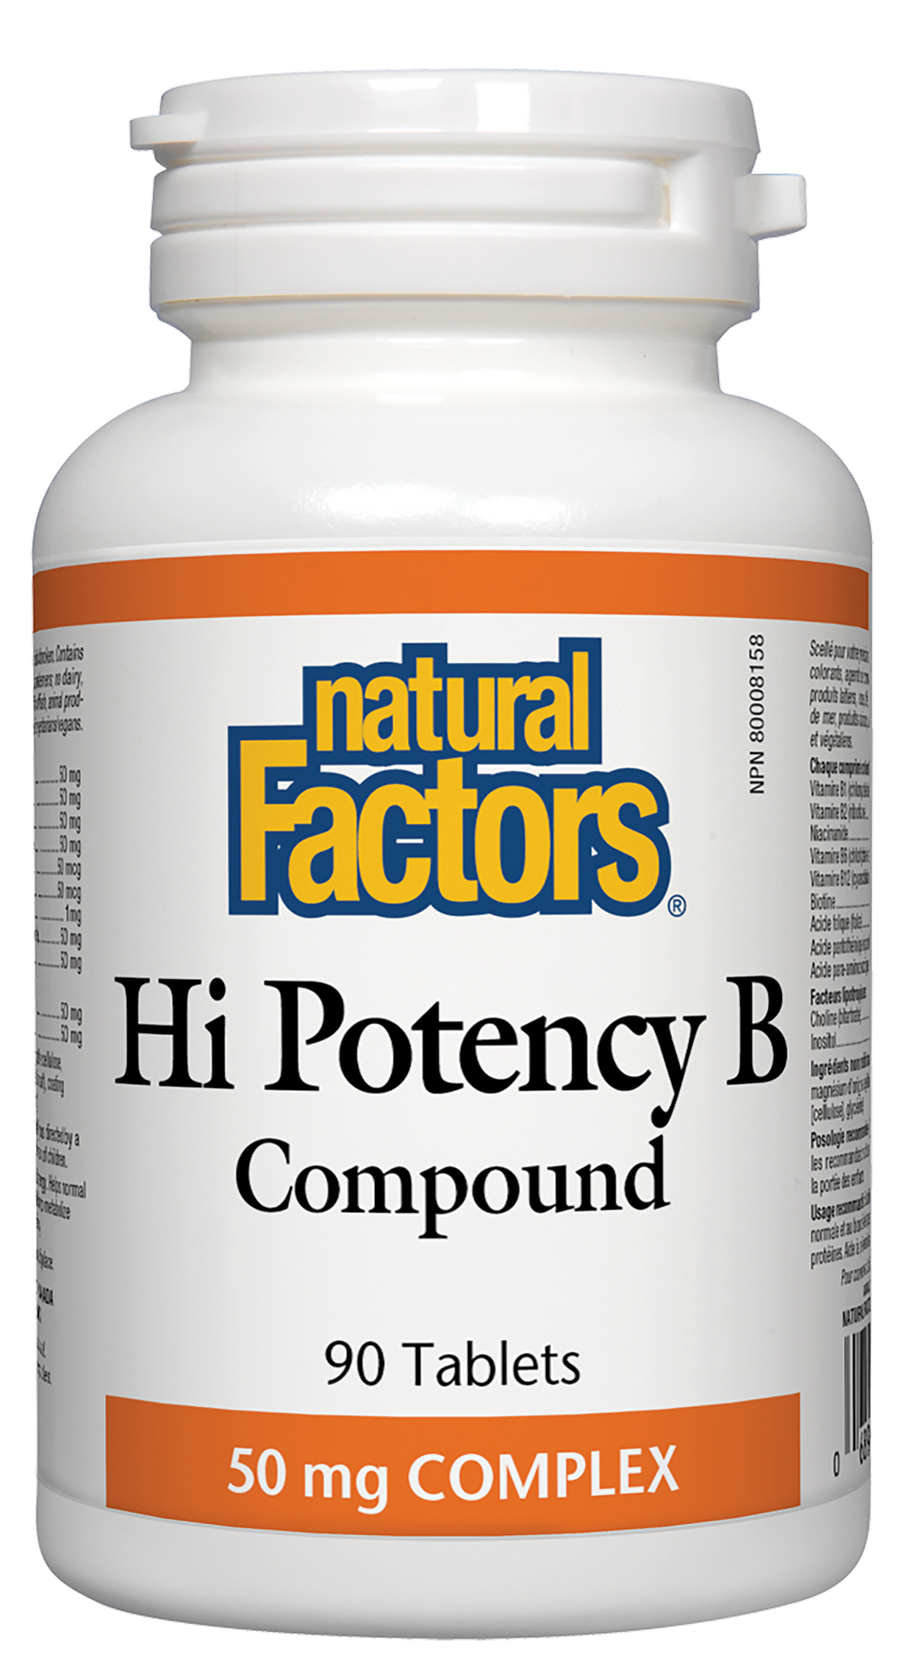 Natural Factors Hi Potency B Compound 50 mg COMPLEX 90 Tablets